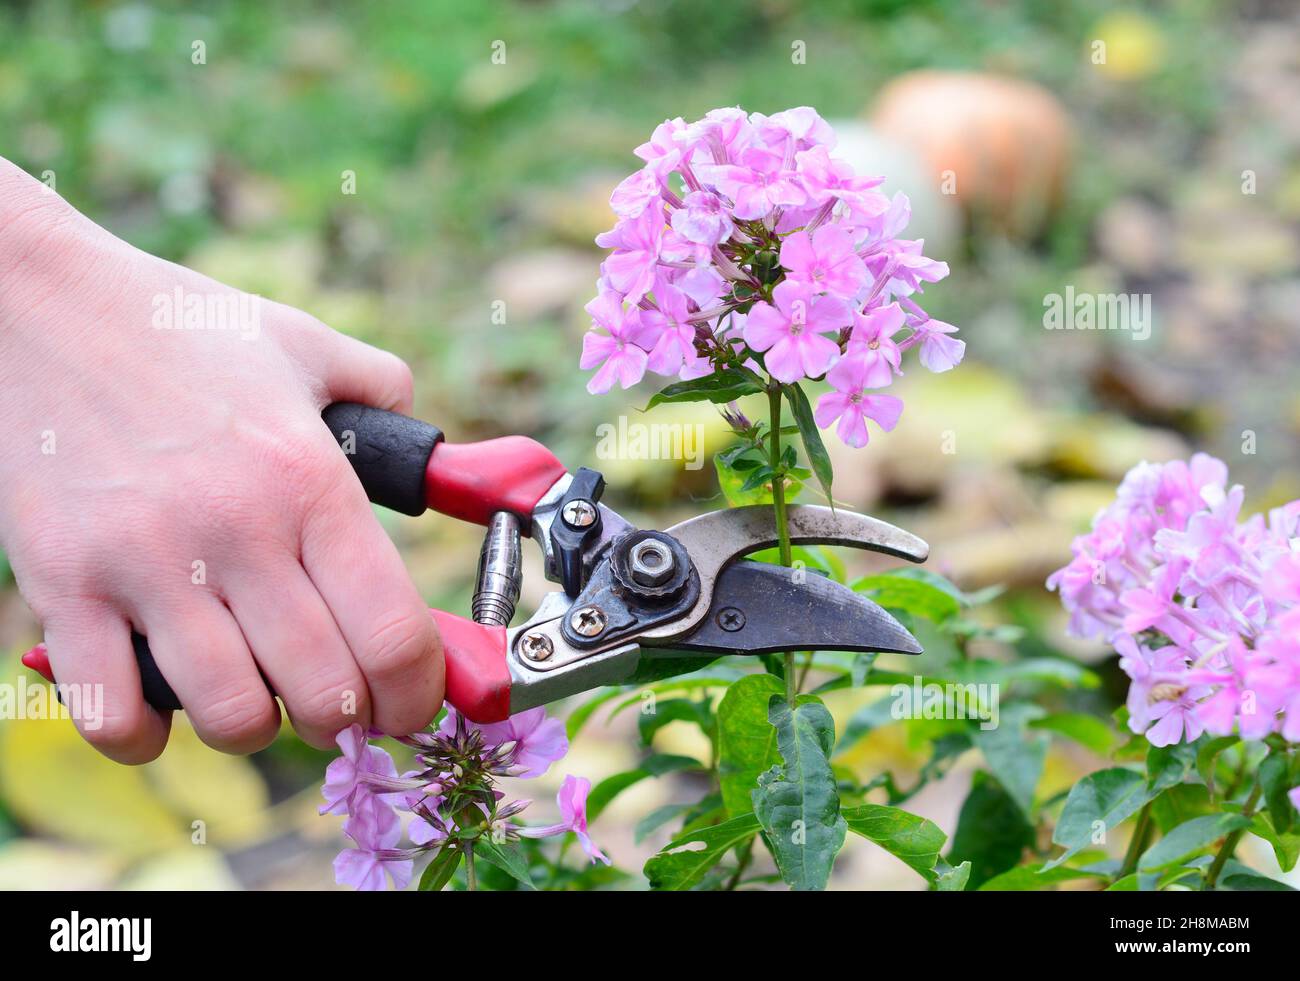 Im Garten eine panikierte, hohe Phlox anbauen. Ein Gärtner headheading eine rosa phlox paniculata, um die Blütezeit zu verlängern und mehr phlox Blumen haben. Stockfoto